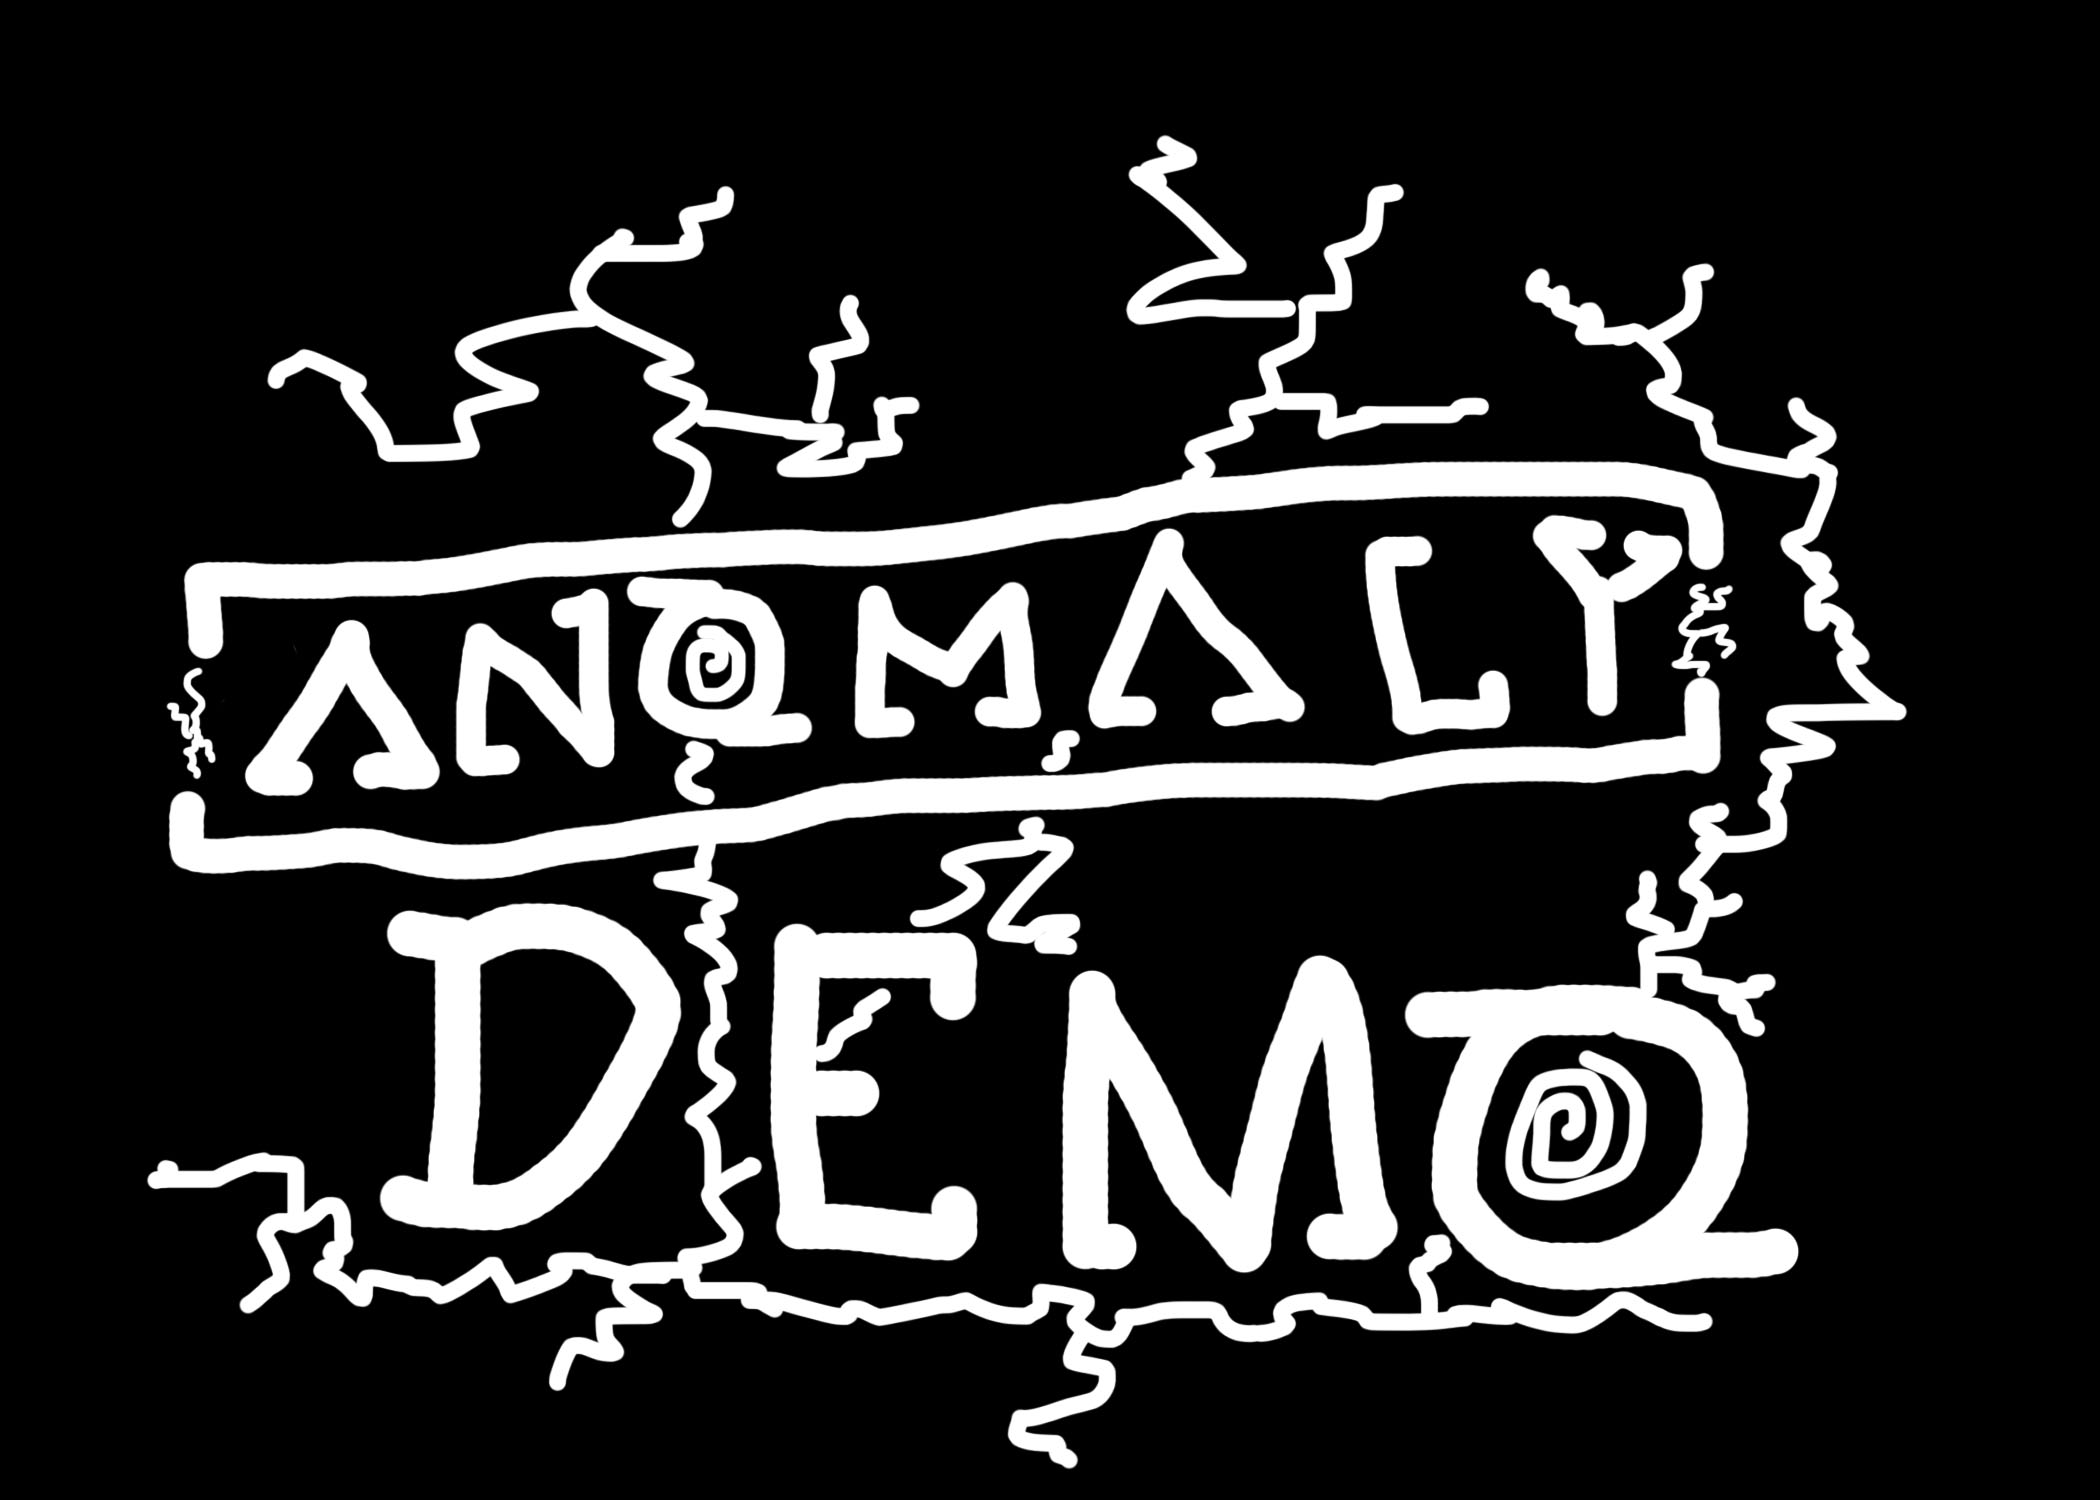 anomaly 2 demo